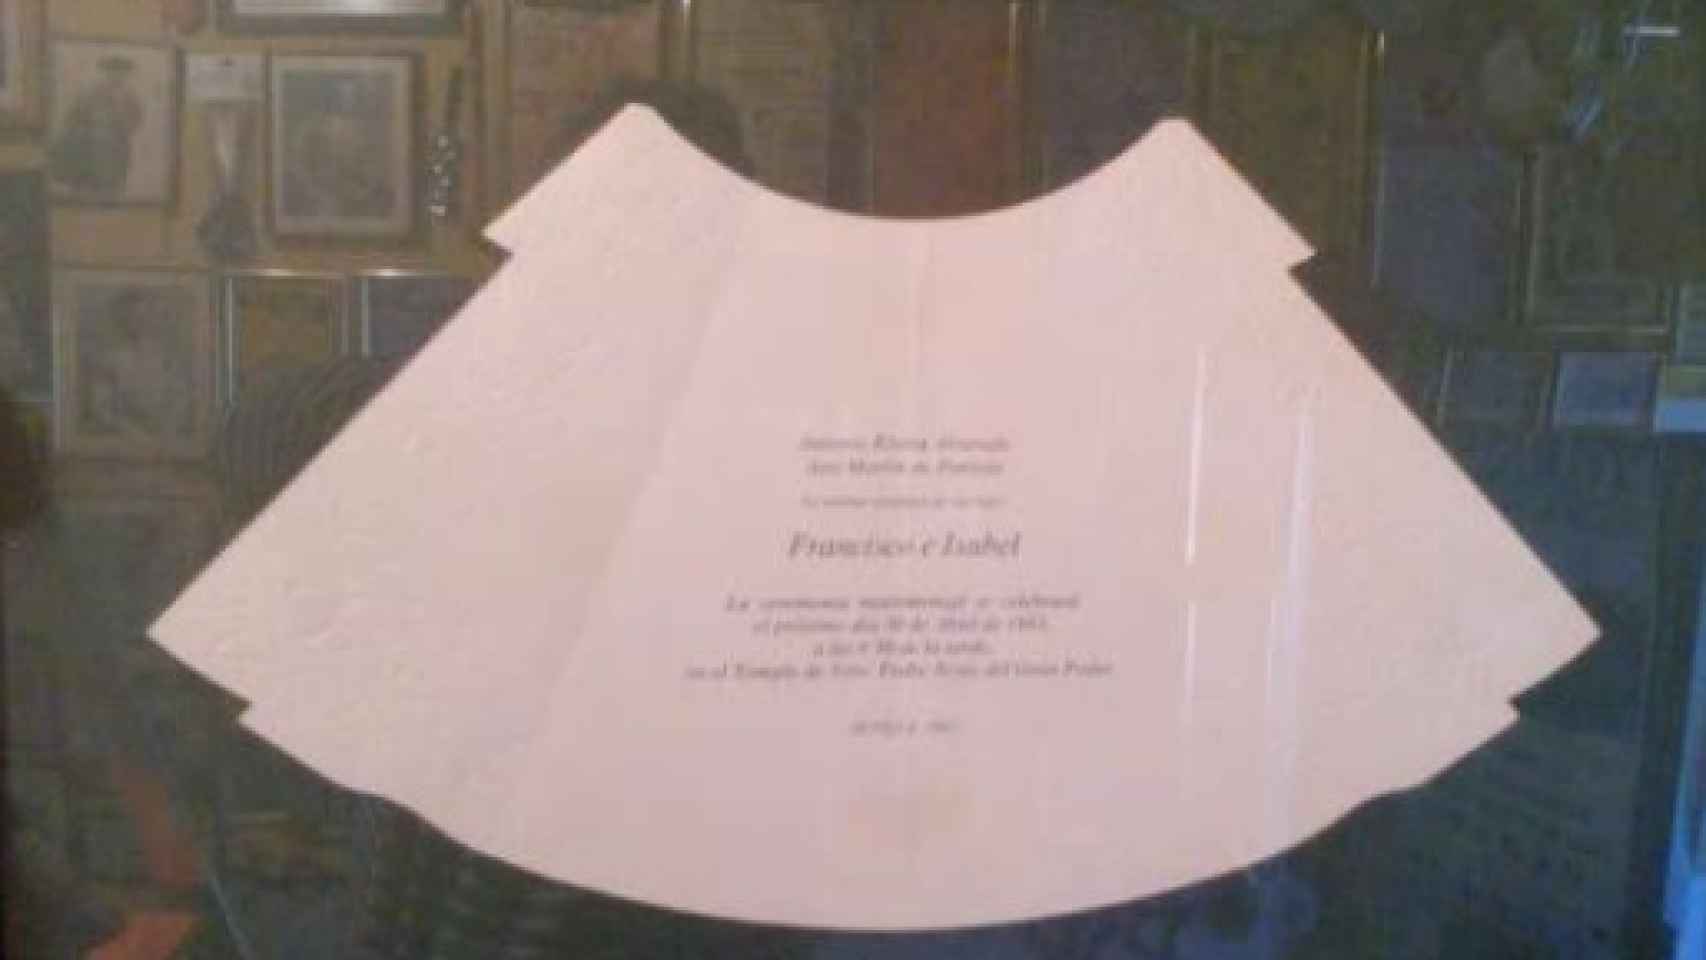 Invitación de la boda de Isabel Pantoja en una vitrina.